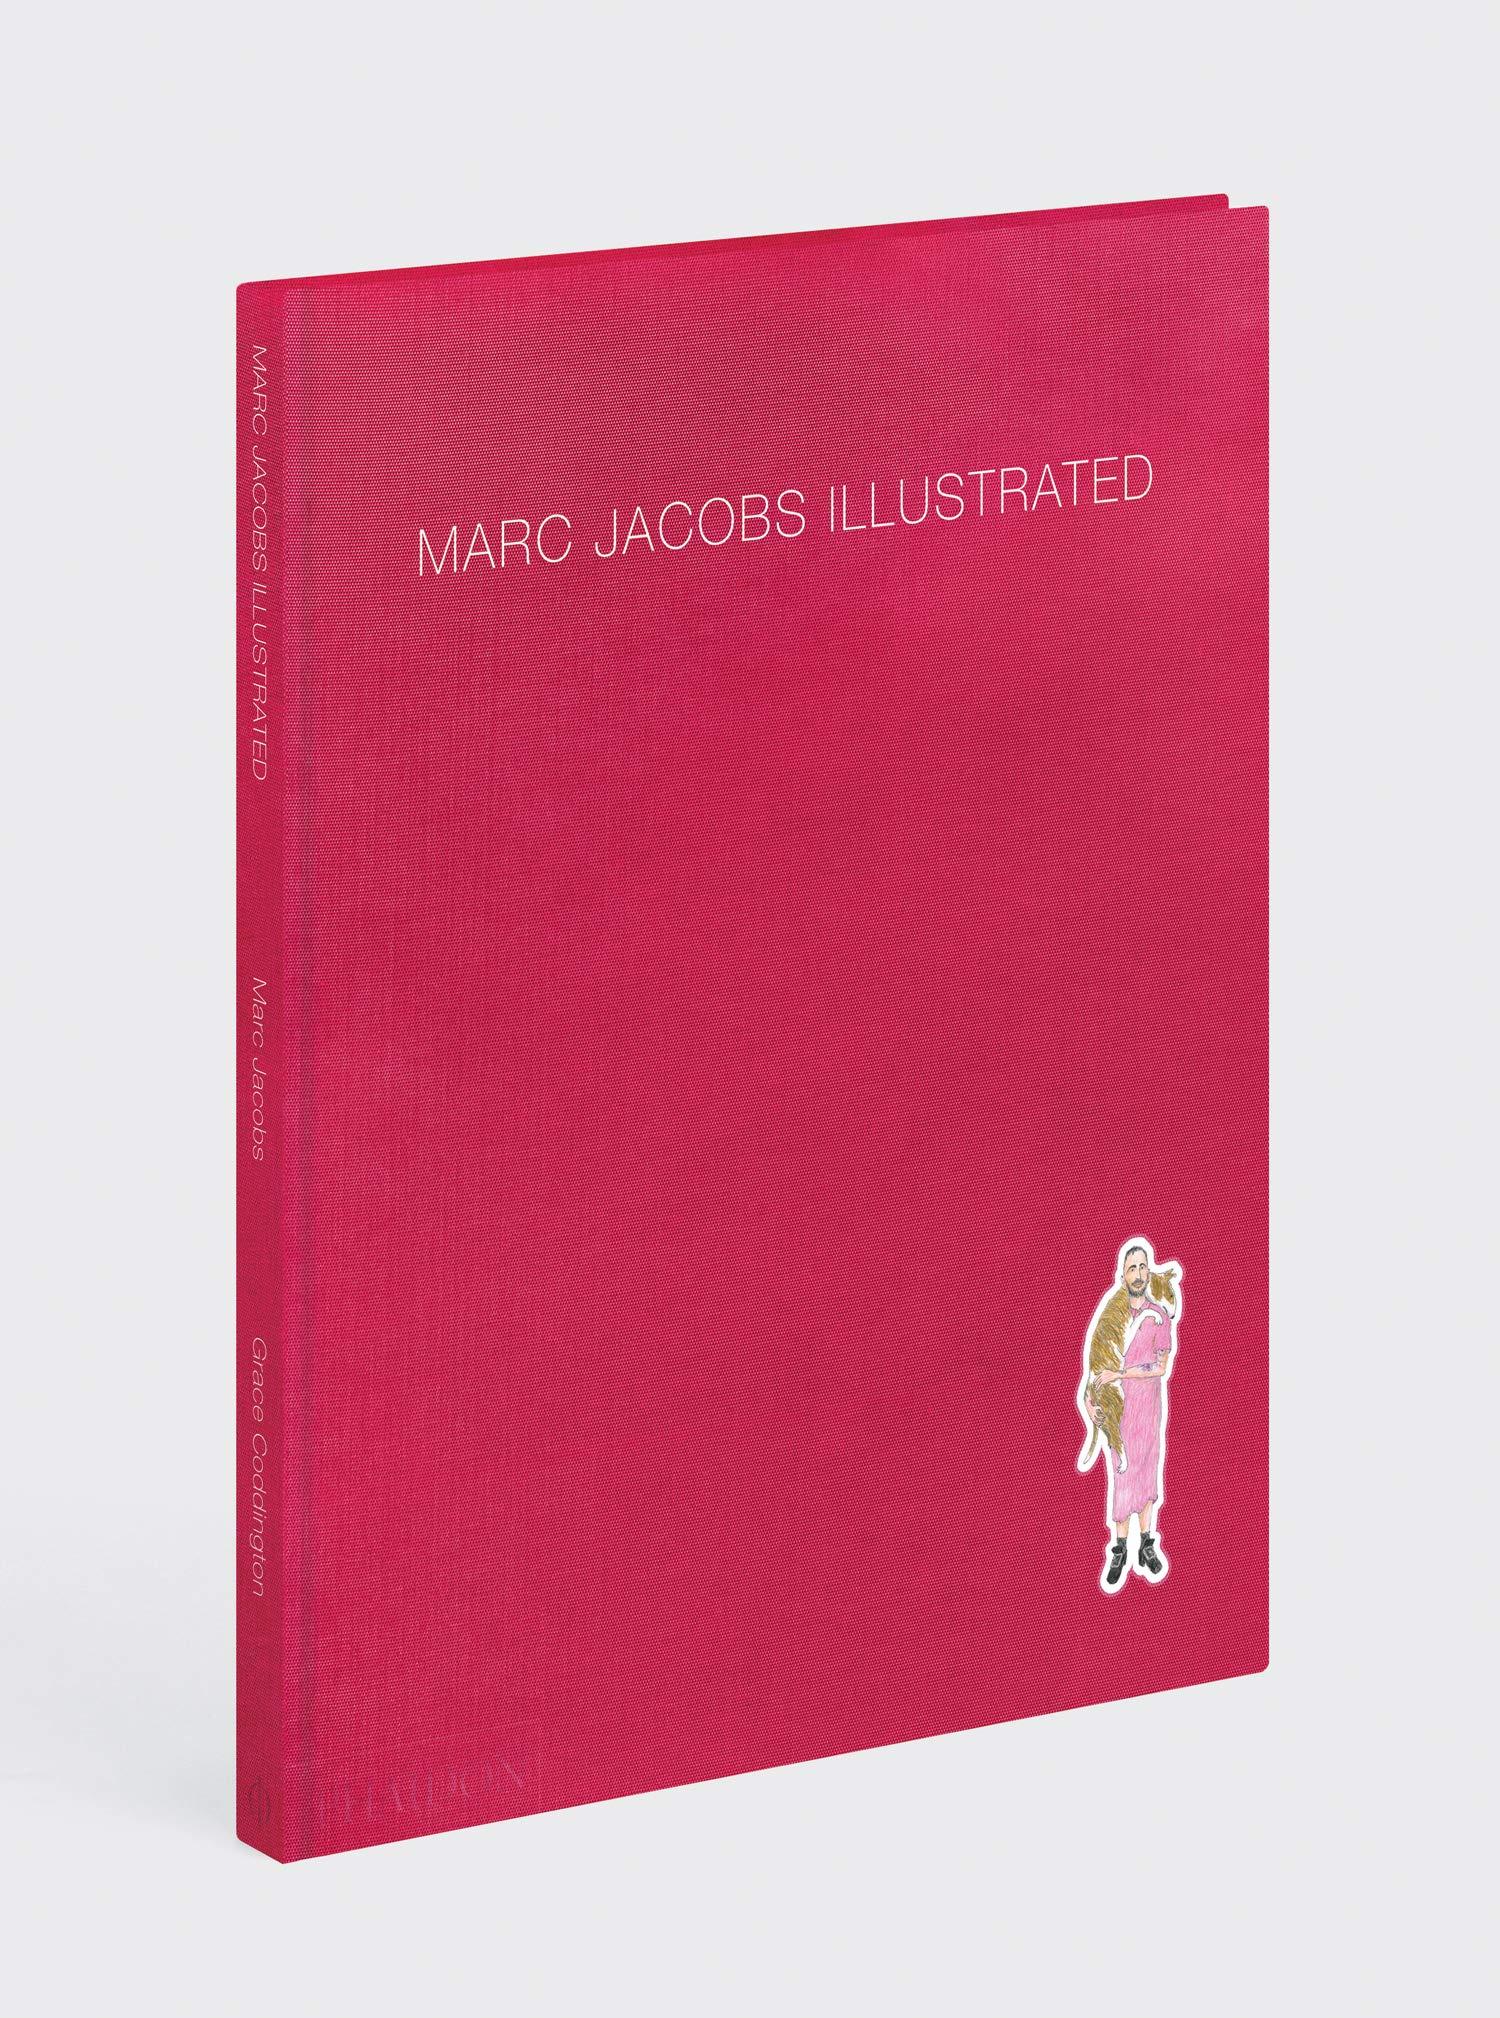 Marc Jacobs illustré (couverture rigide) par Grace Coddington
En stock à Los Angeles

Une monographie unique de plus de 50 collections créées par le créateur de mode Marc Jacobs au cours des 25 dernières années et illustrée par Grace